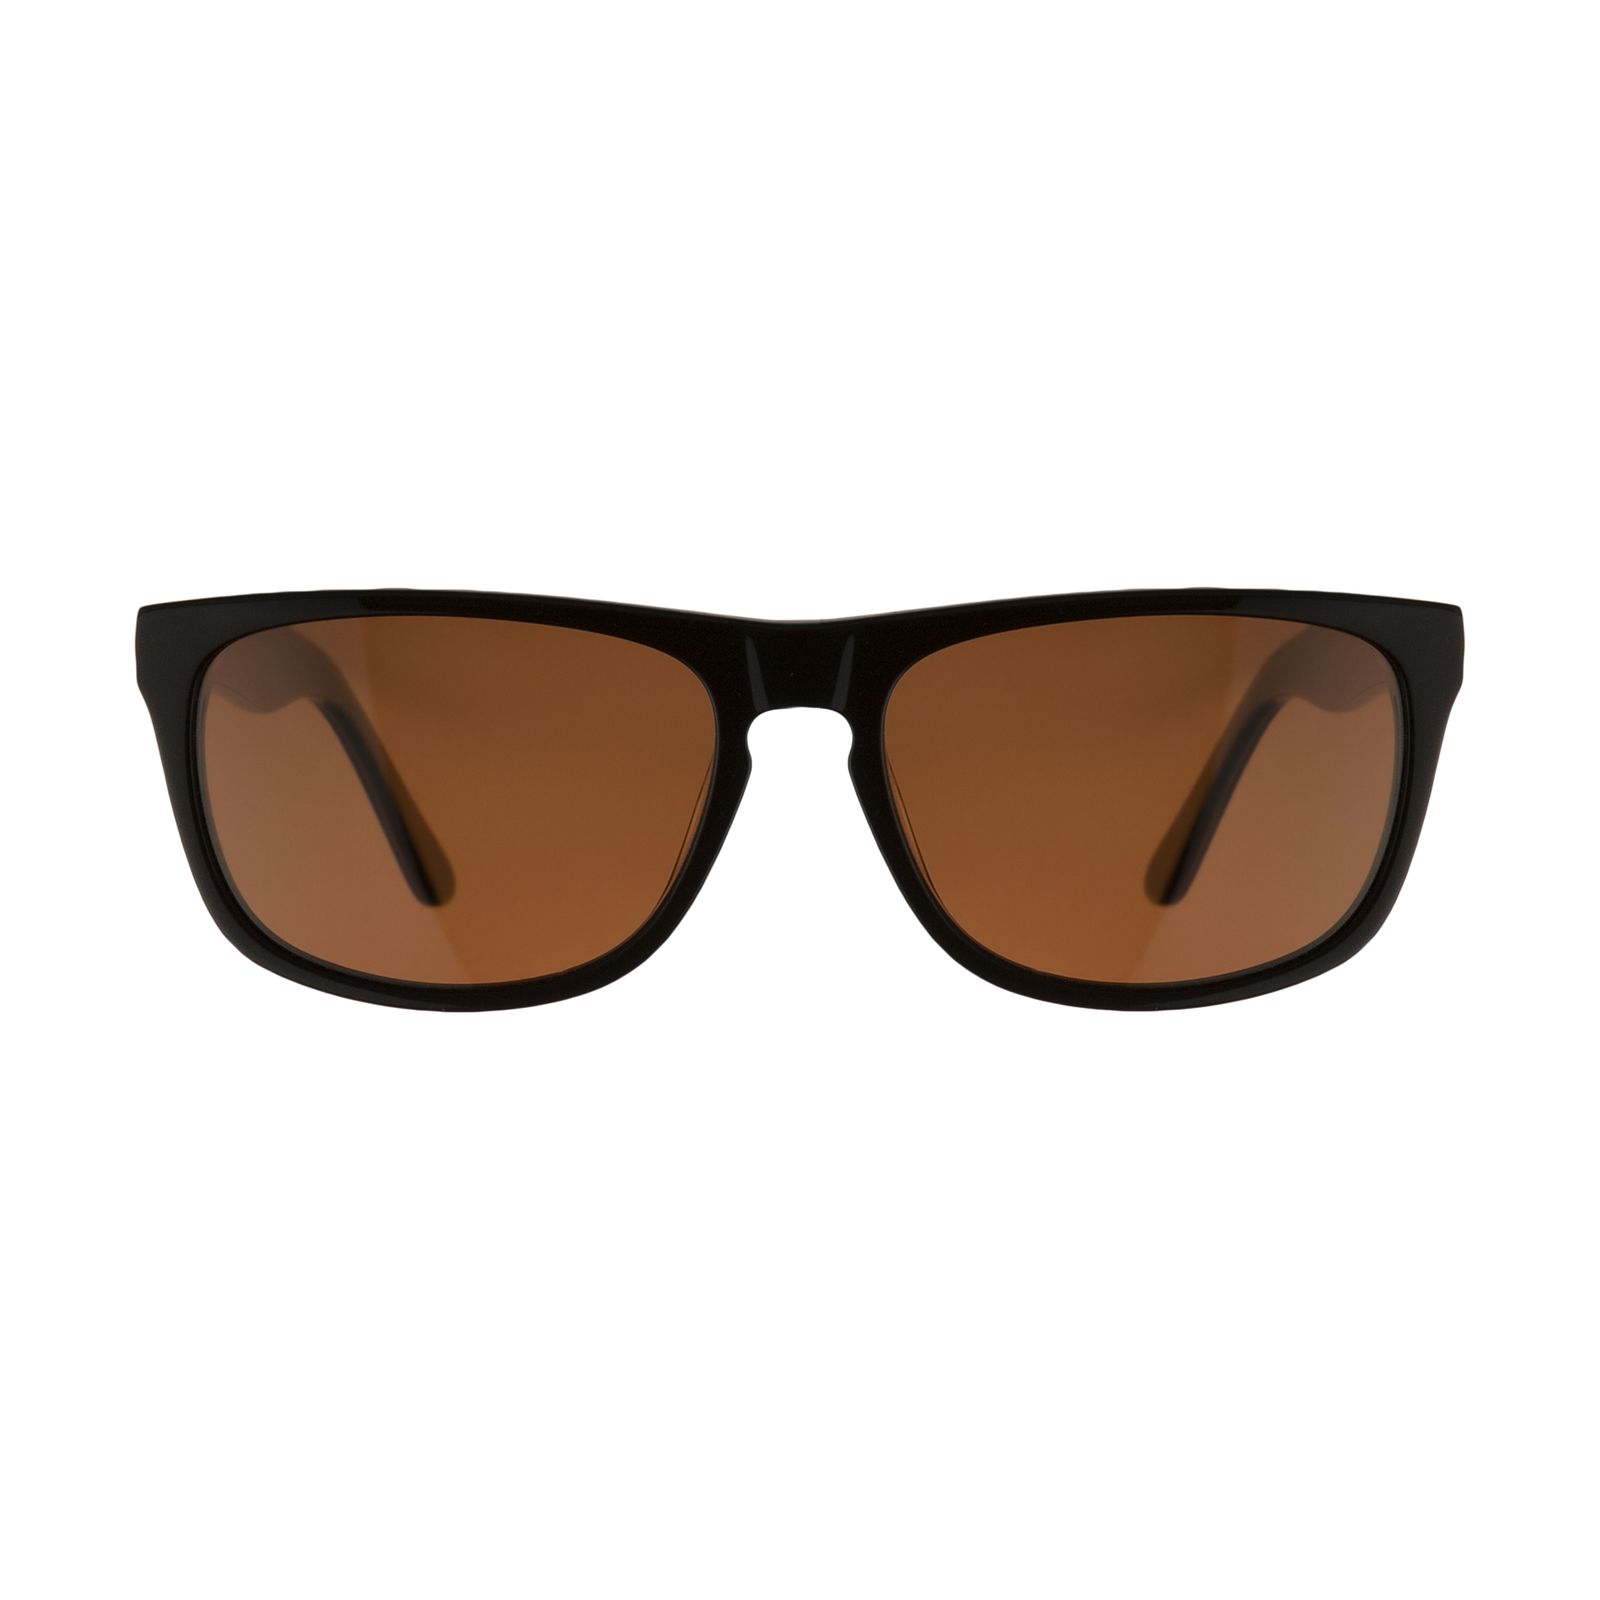 عینک آفتابی مردانه کلارک بای تروی کولیزوم مدل k4008-c.2 -  - 1